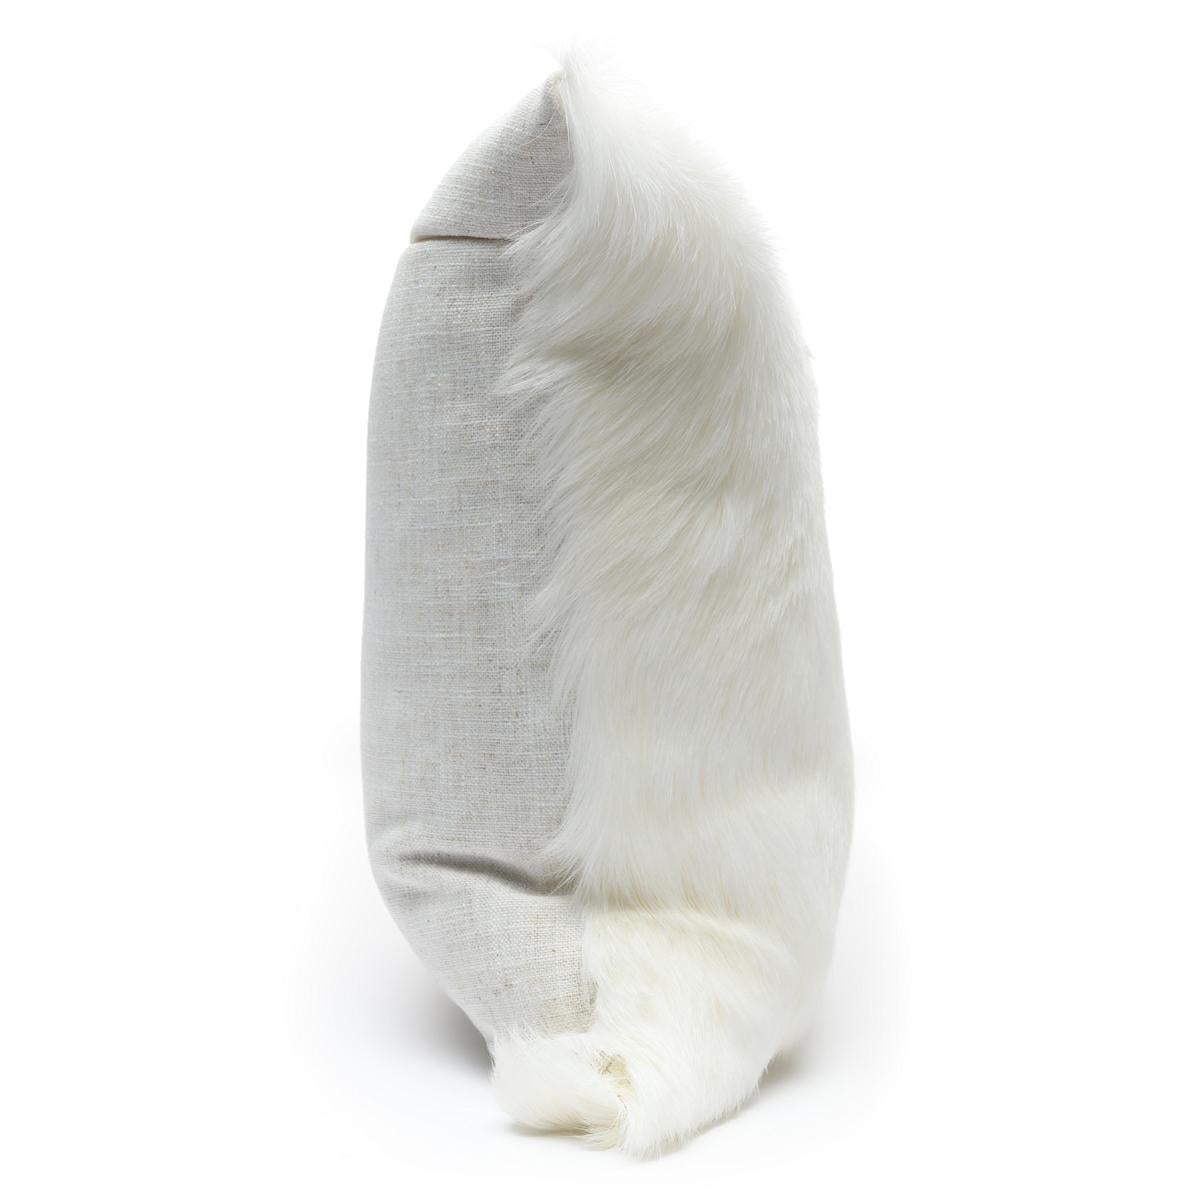 Bringen Sie exotische Elemente in Ihre Einrichtung mit diesem Kissen aus natürlichem weißem Ziegenhaar. Die australische Designerin Emily Barbara wählt jedes Ziegenfell persönlich aus, um die natürliche Schönheit der einzelnen Häute für jedes